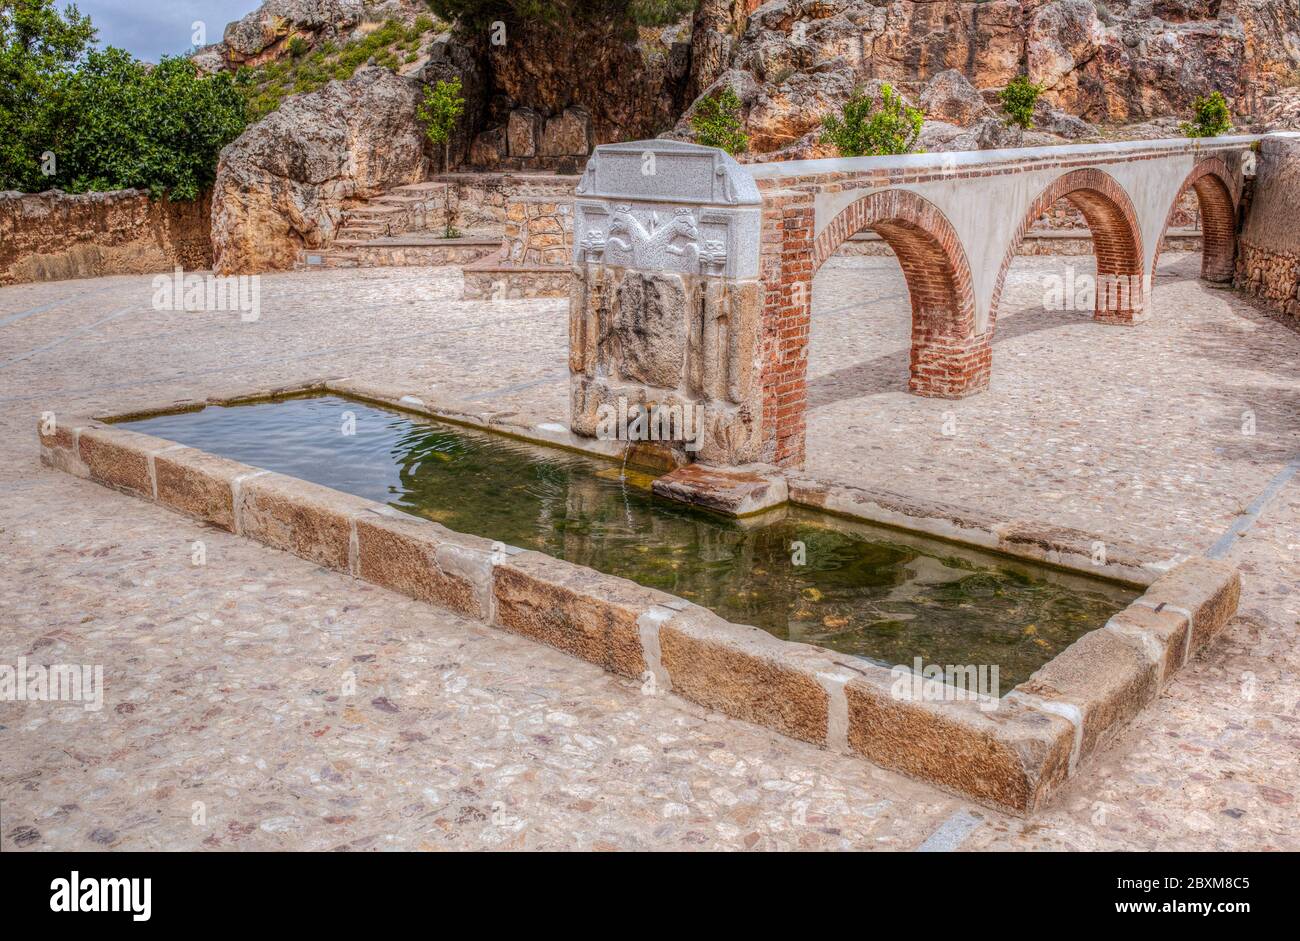 Palomas fontana pilastro costruito nel 16 ° secolo, Hornachos, Spagna. Stemma imperiale di Carlos V scolpito al centro Foto Stock